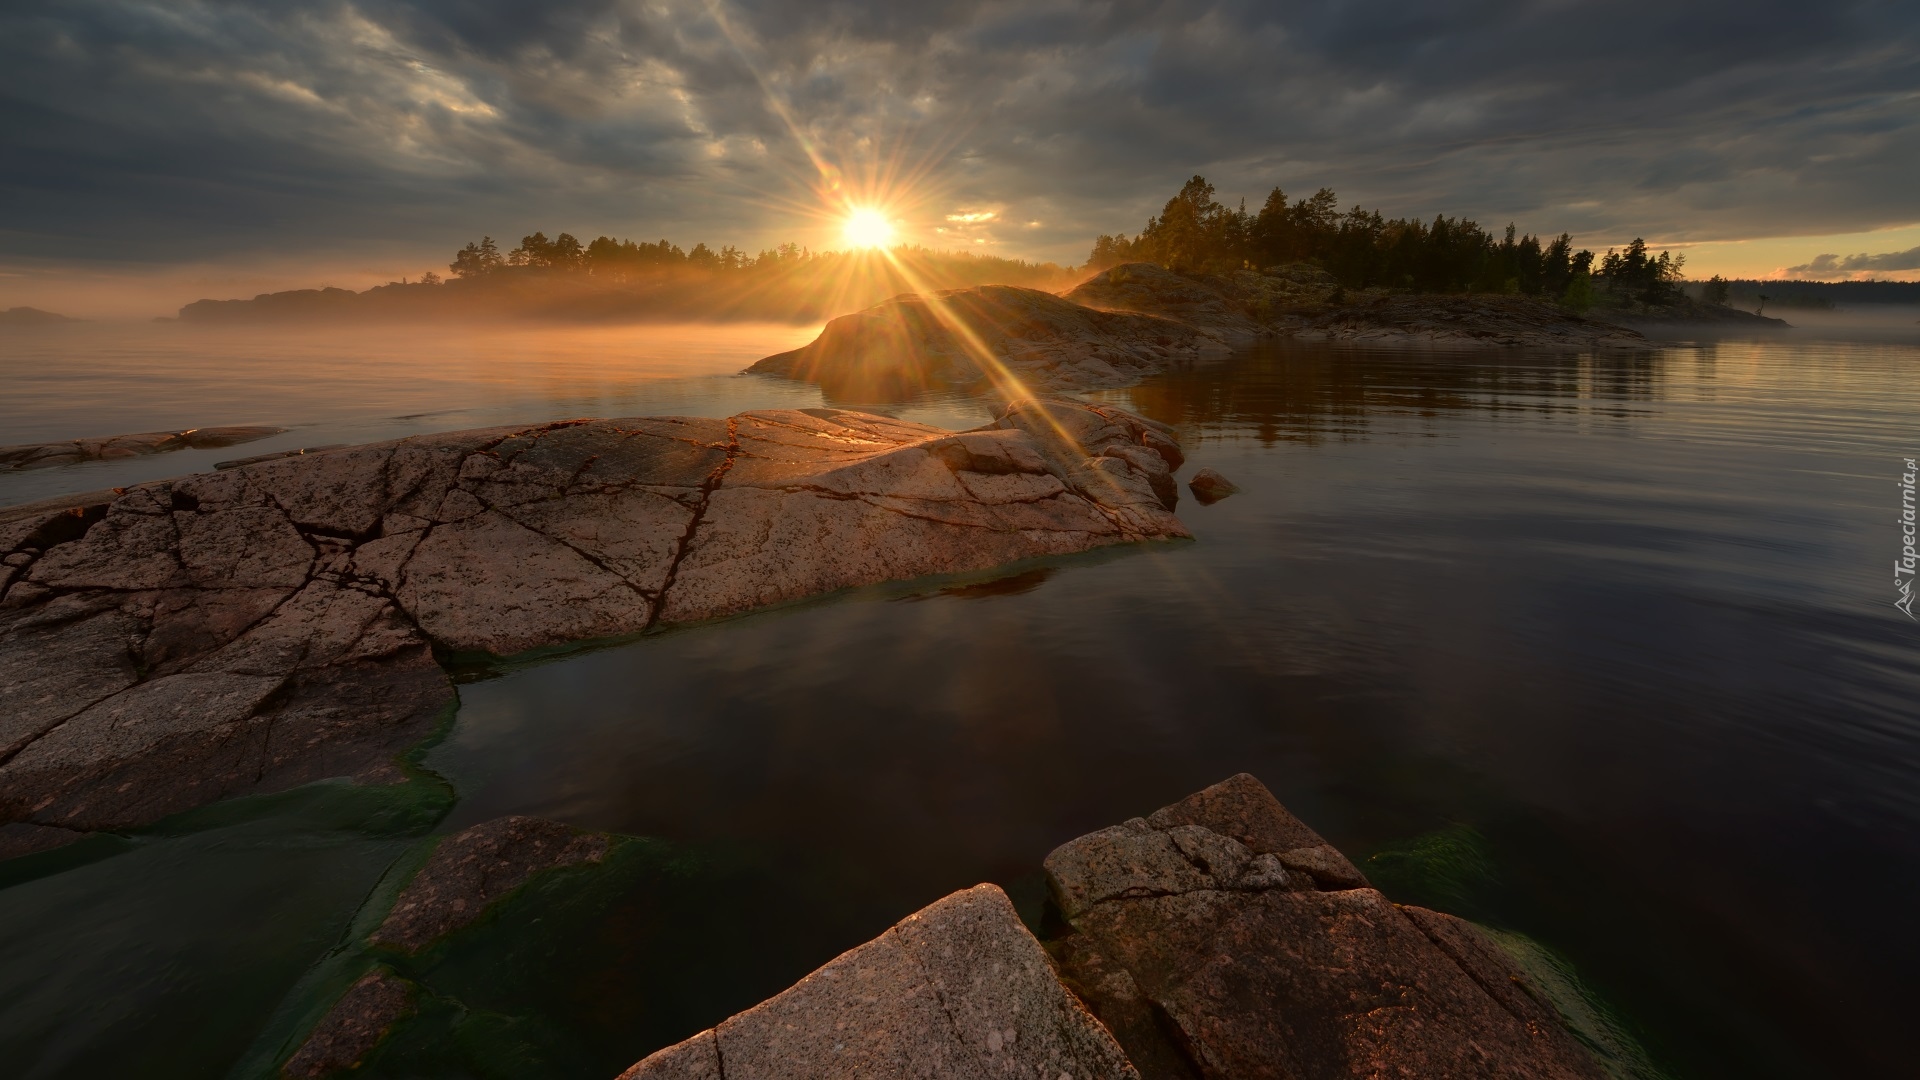 Jezioro Ładoga, Wyspy, Skały, Drzewa, Promienie słońca, Karelia, Rosja